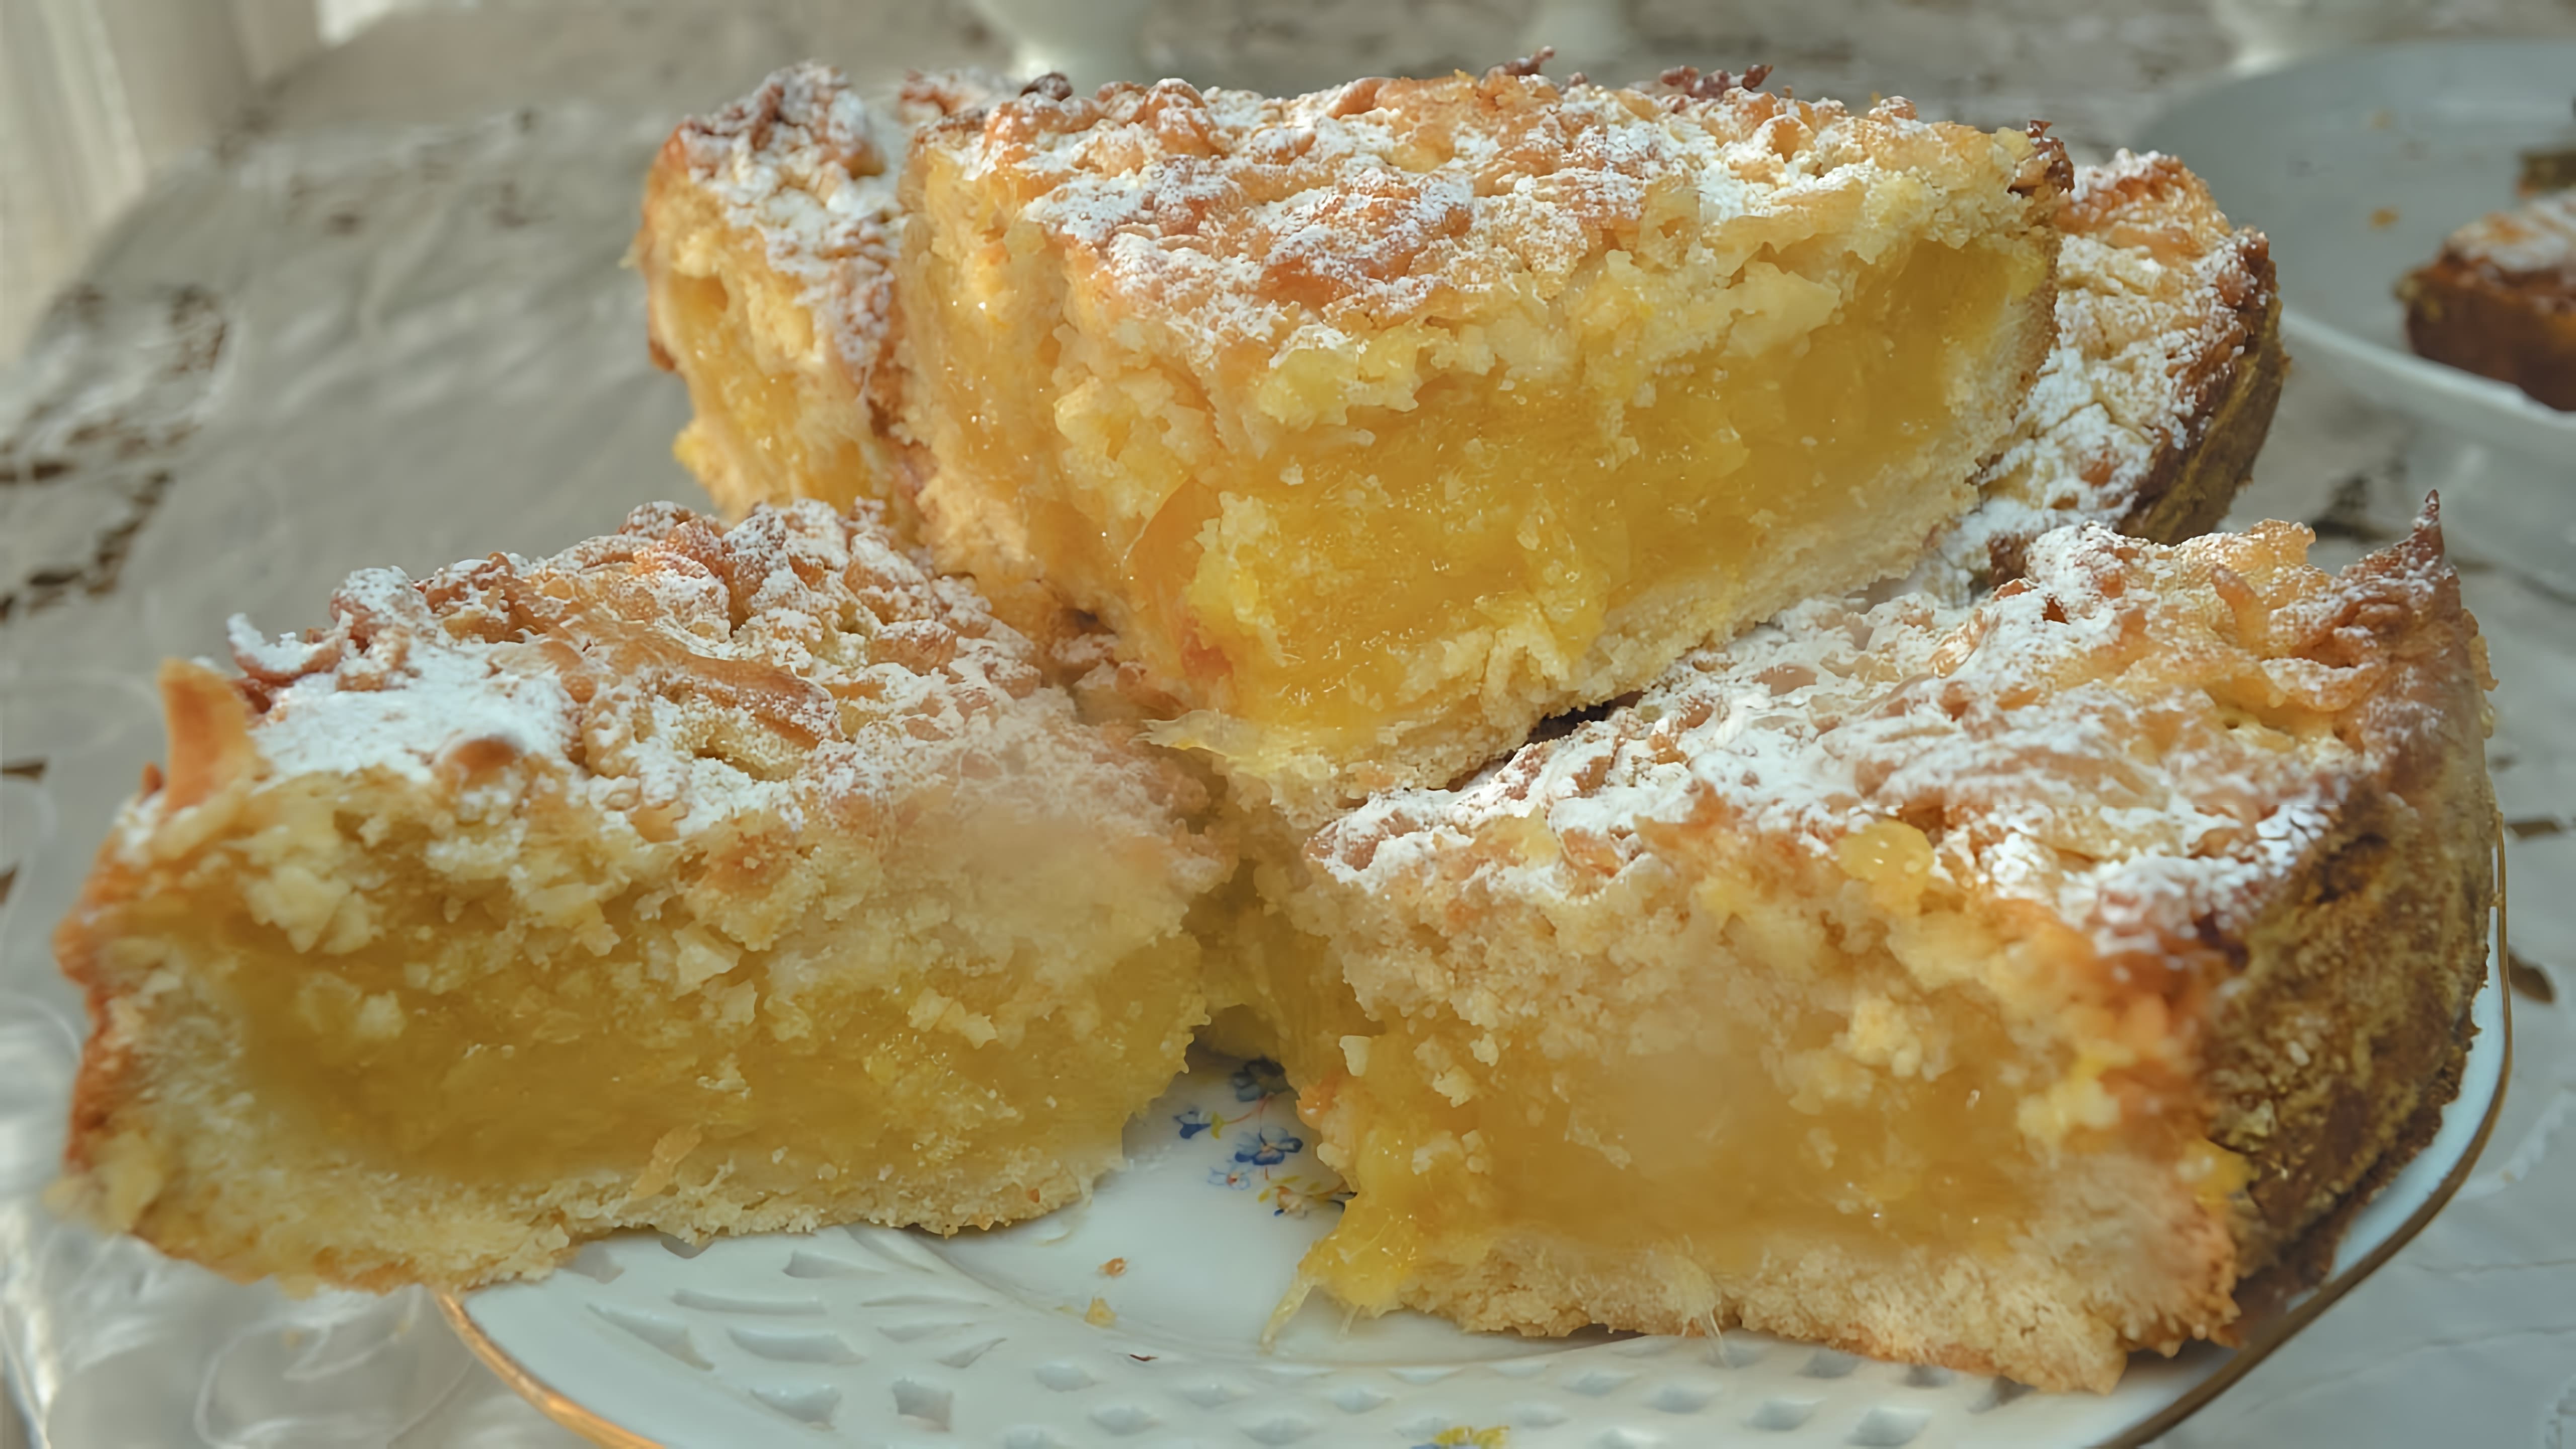 В этом видео демонстрируется рецепт приготовления тертого пирога с апельсином, яблоком и лимоном